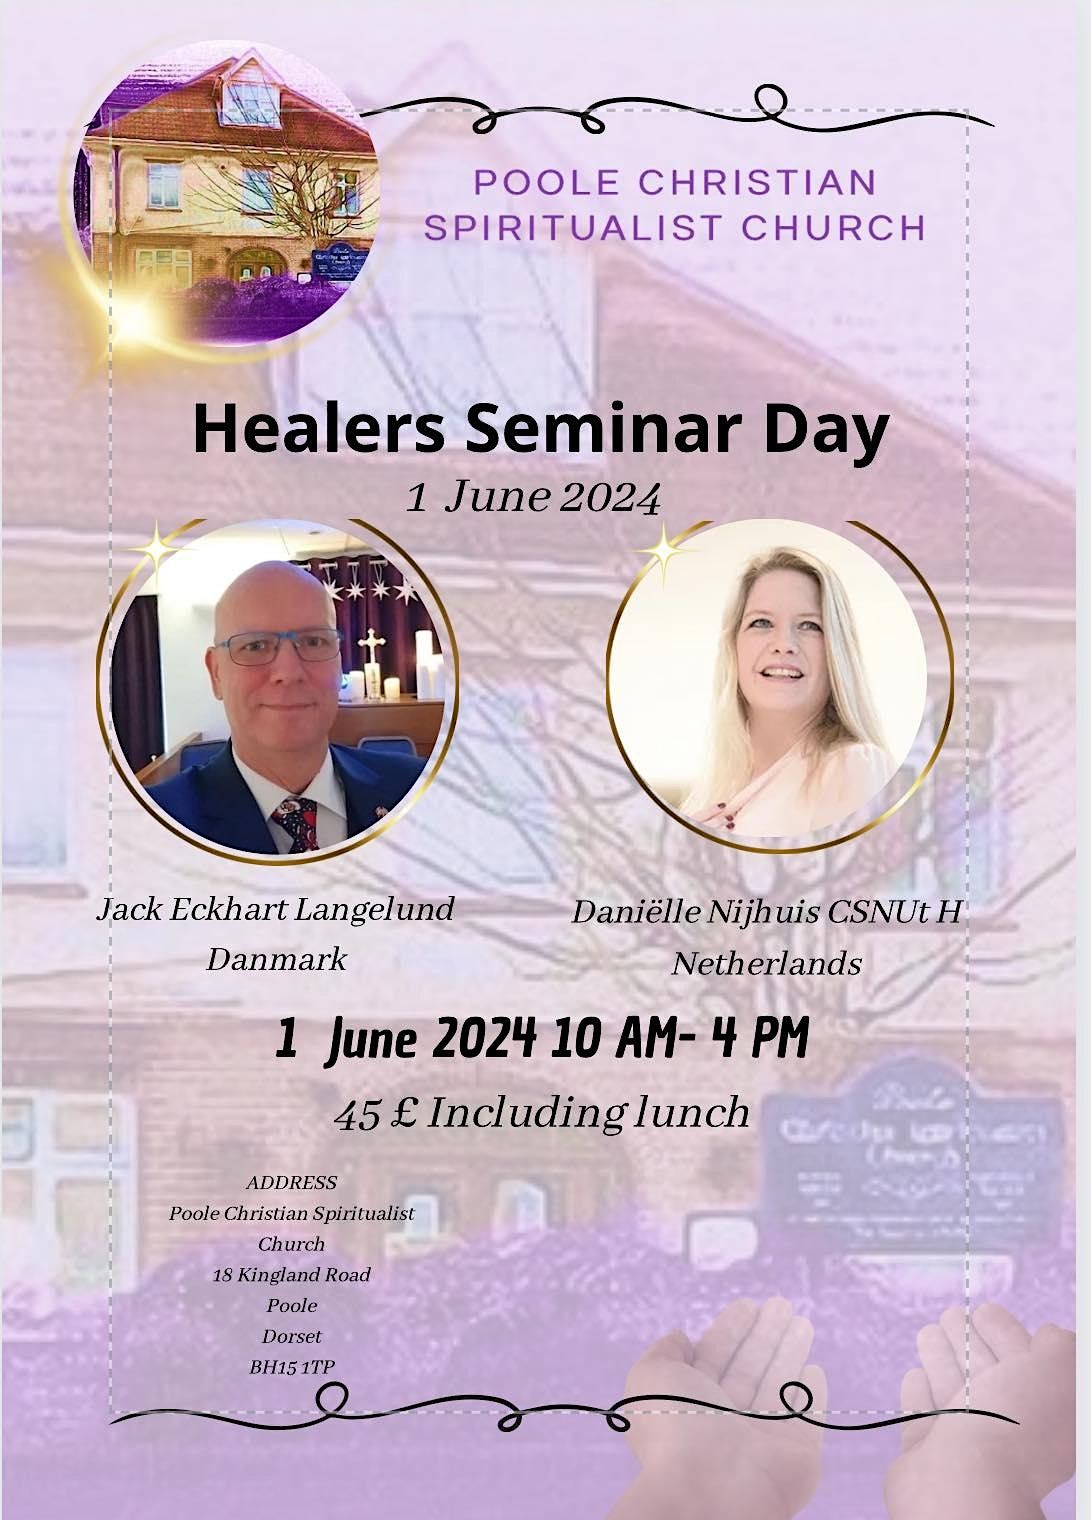 Healers Seminar Day with Danielle Nijhuis CSNUt & Jack Eckhart Langelund.